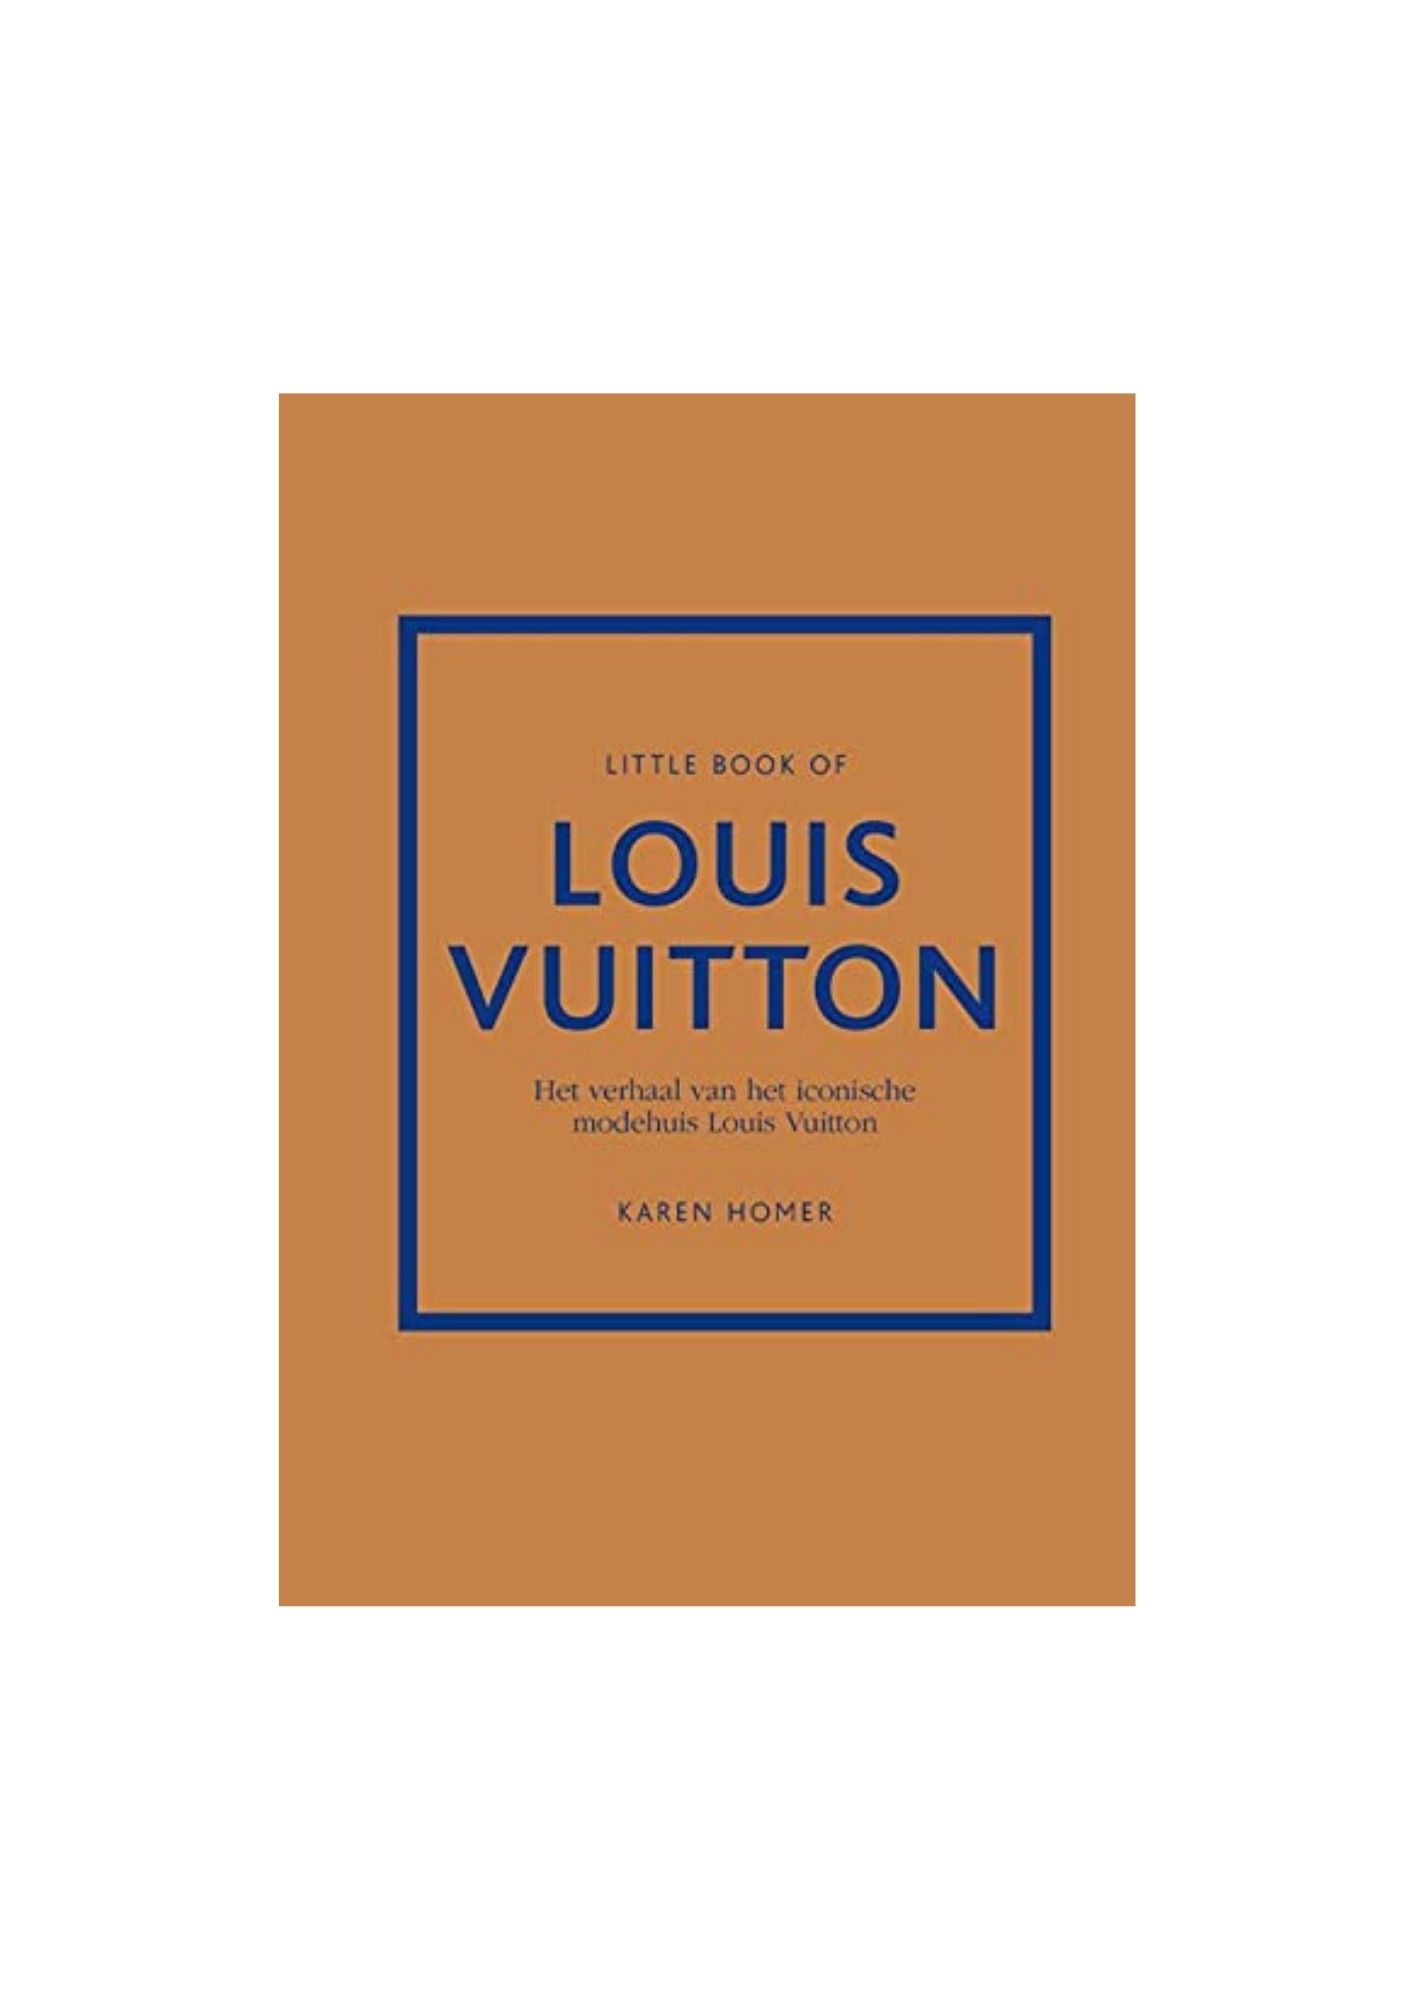  Little book of Louis Vuitton: het verhaal van het